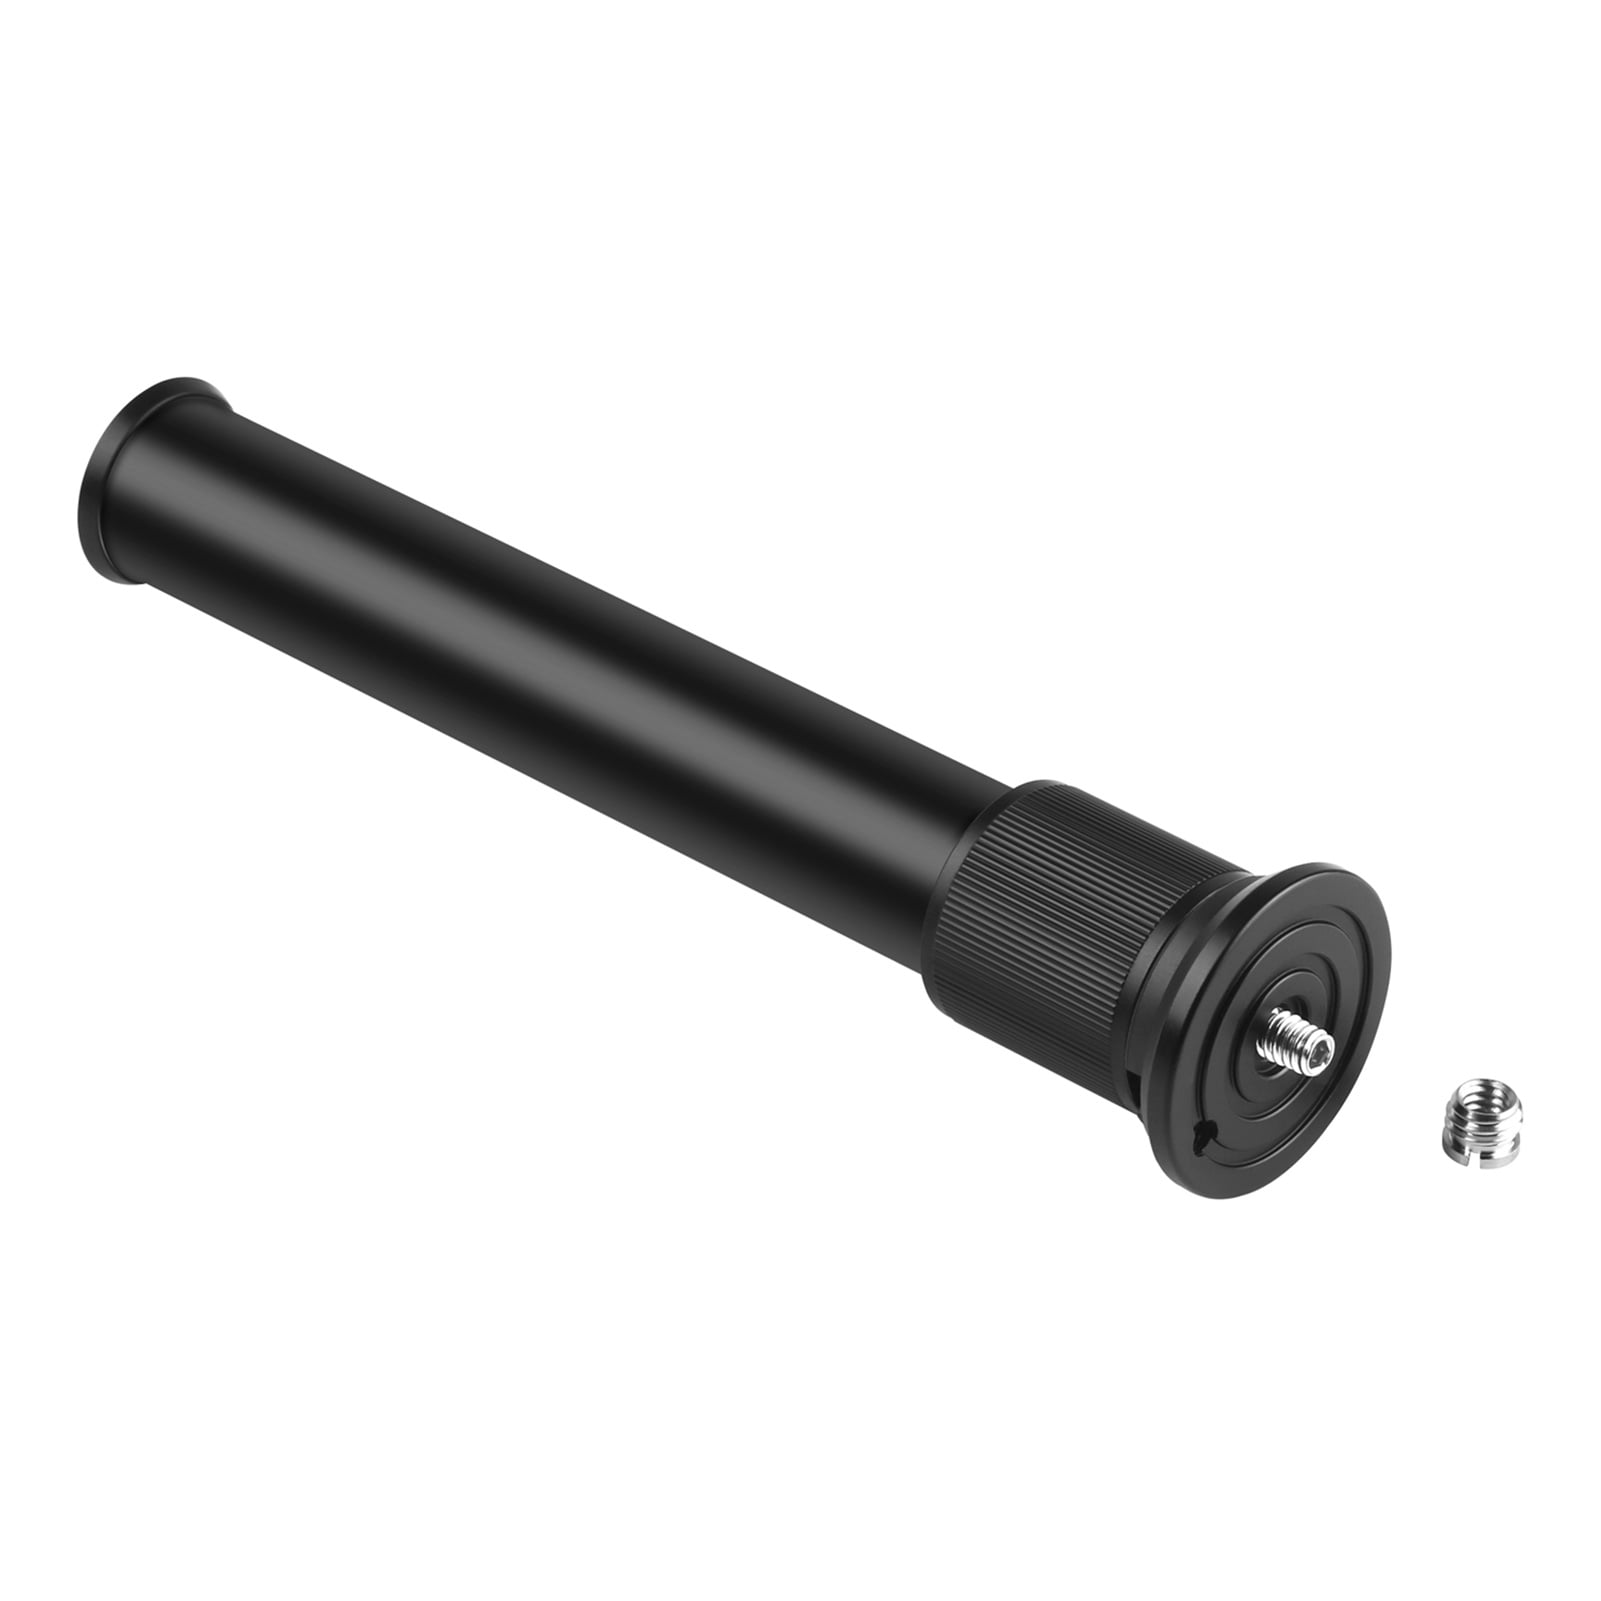 Extendable Aluminum Alloy Extension Pole Rod 19-31cm Universal